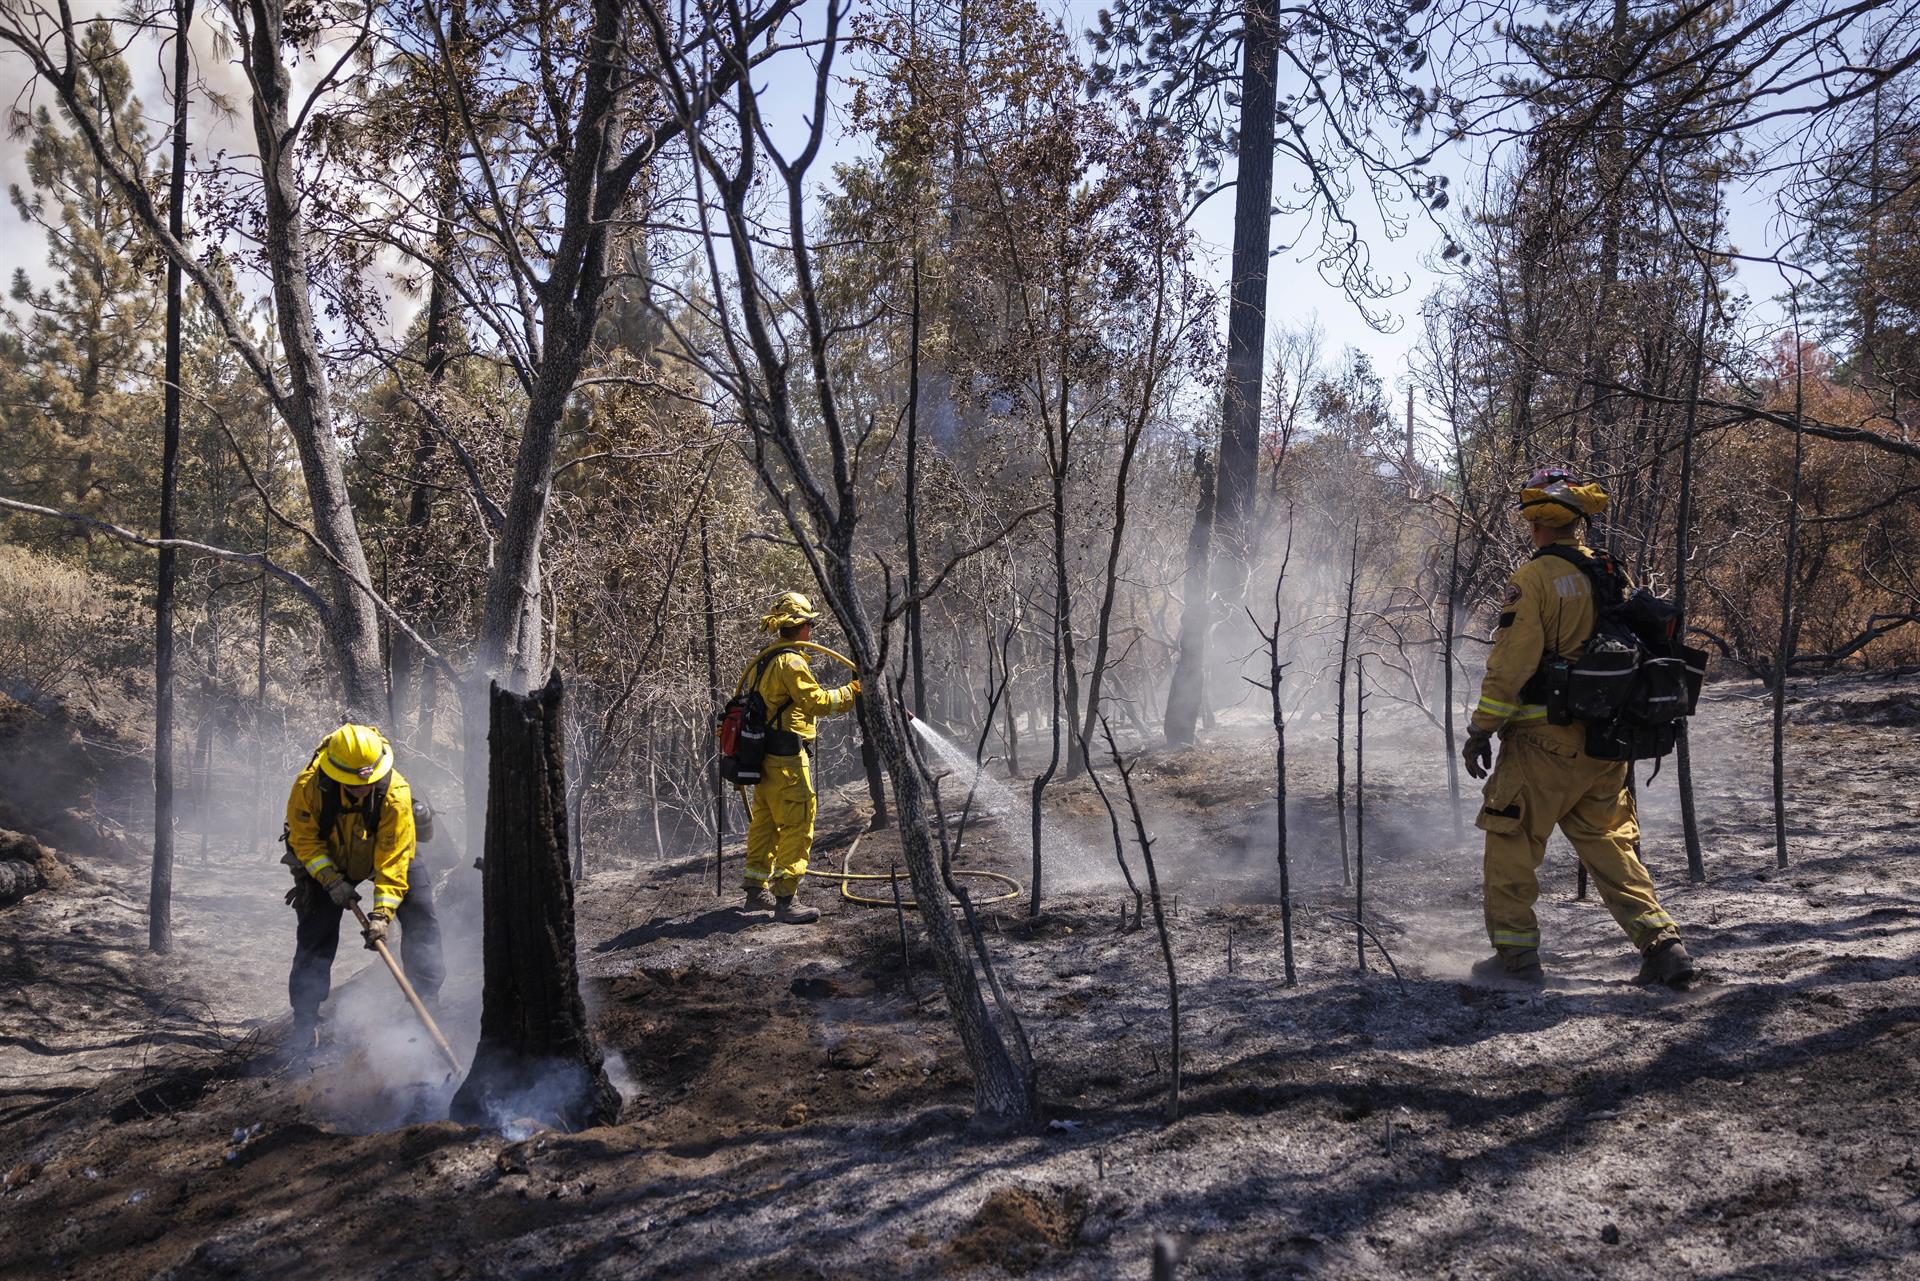 Containment of the fire near Yosemite Park advances